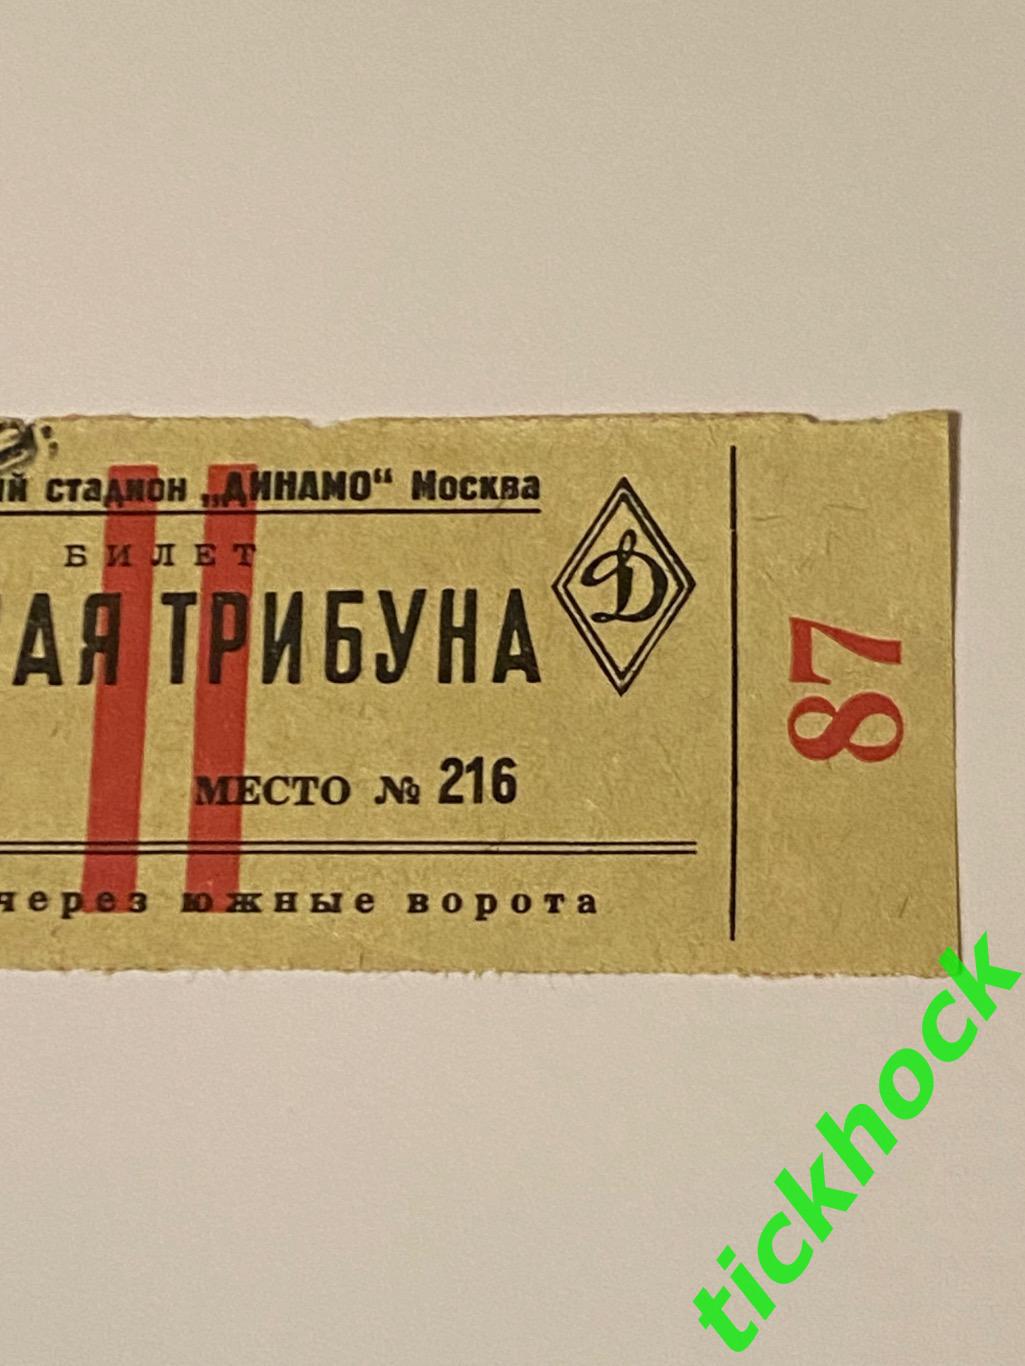 ВВС - Динамо Тбилиси 15 мая 1950 Чемпионат СССР --билет - Южная трибуна 2